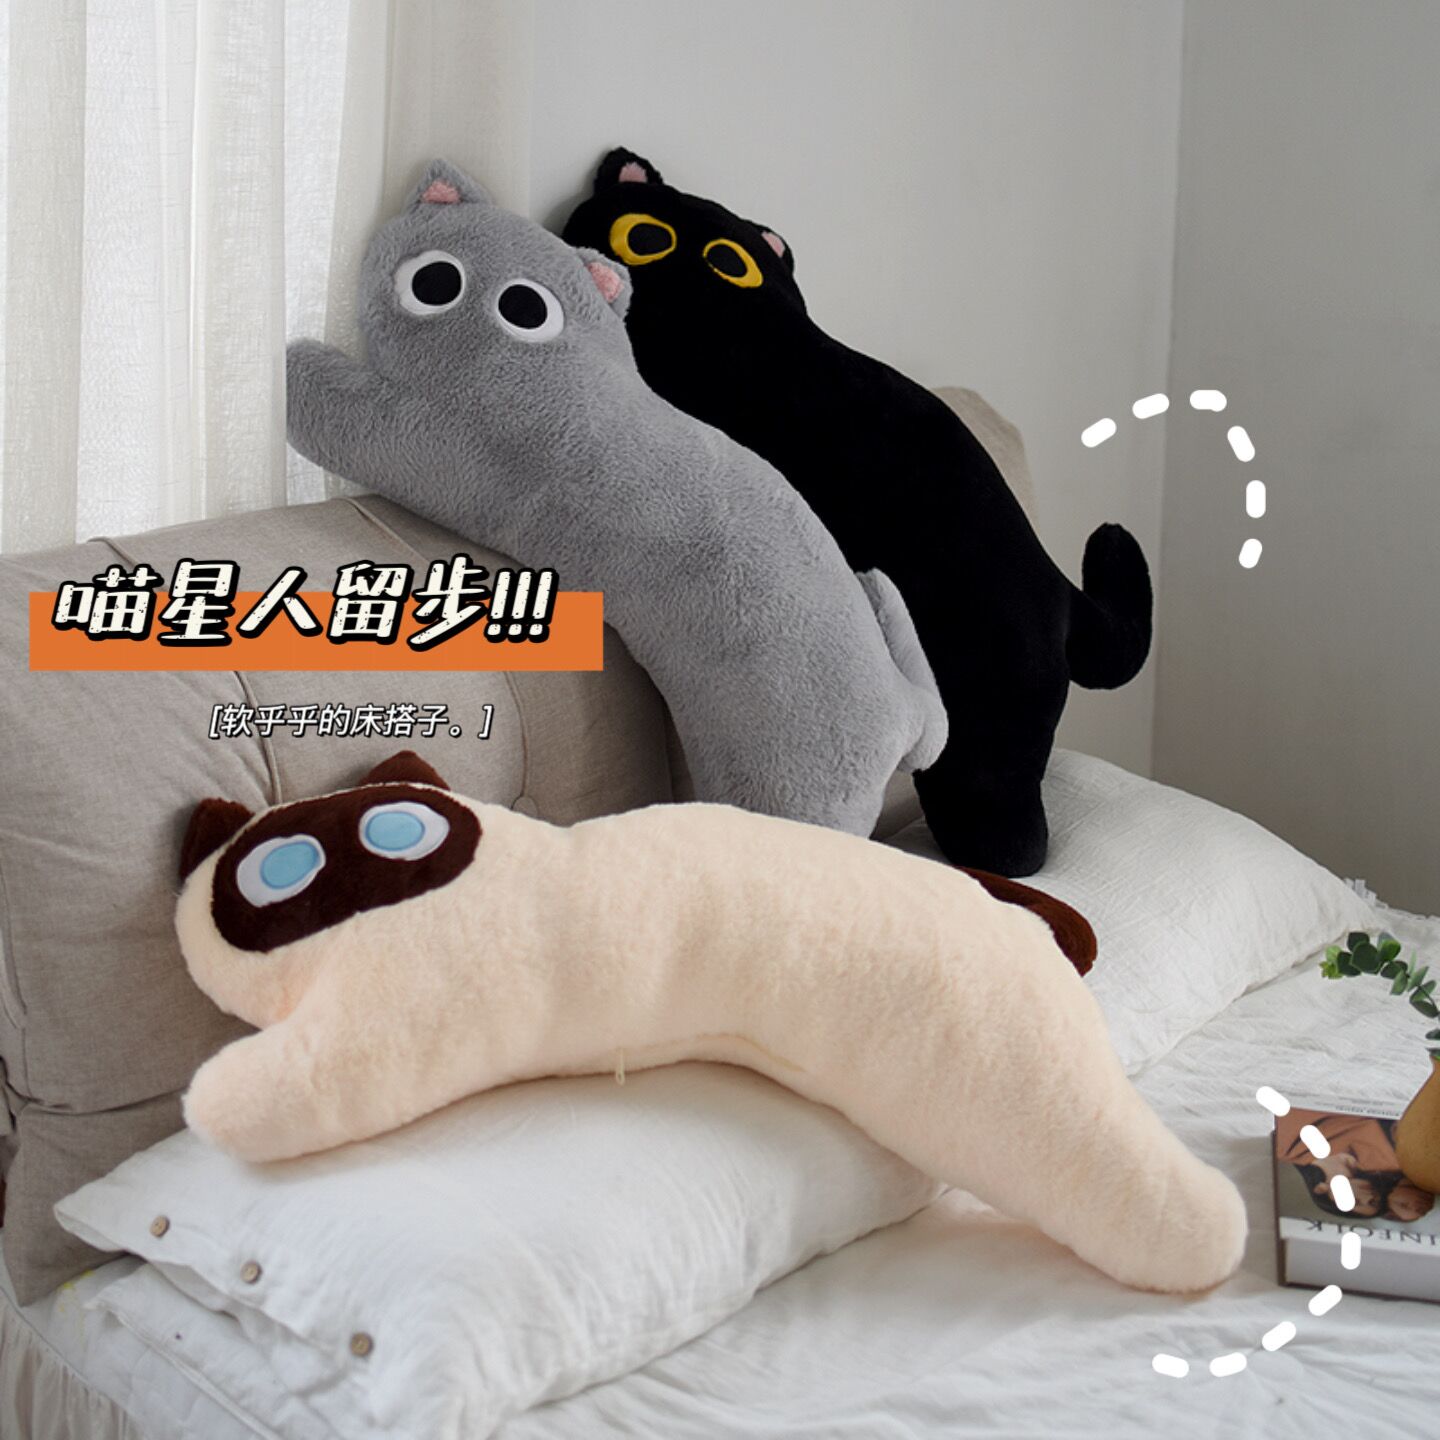 毛绒黑猫抱枕逻辑猫长条枕宿舍靠枕睡觉夹腿抱枕可爱床头靠垫礼物